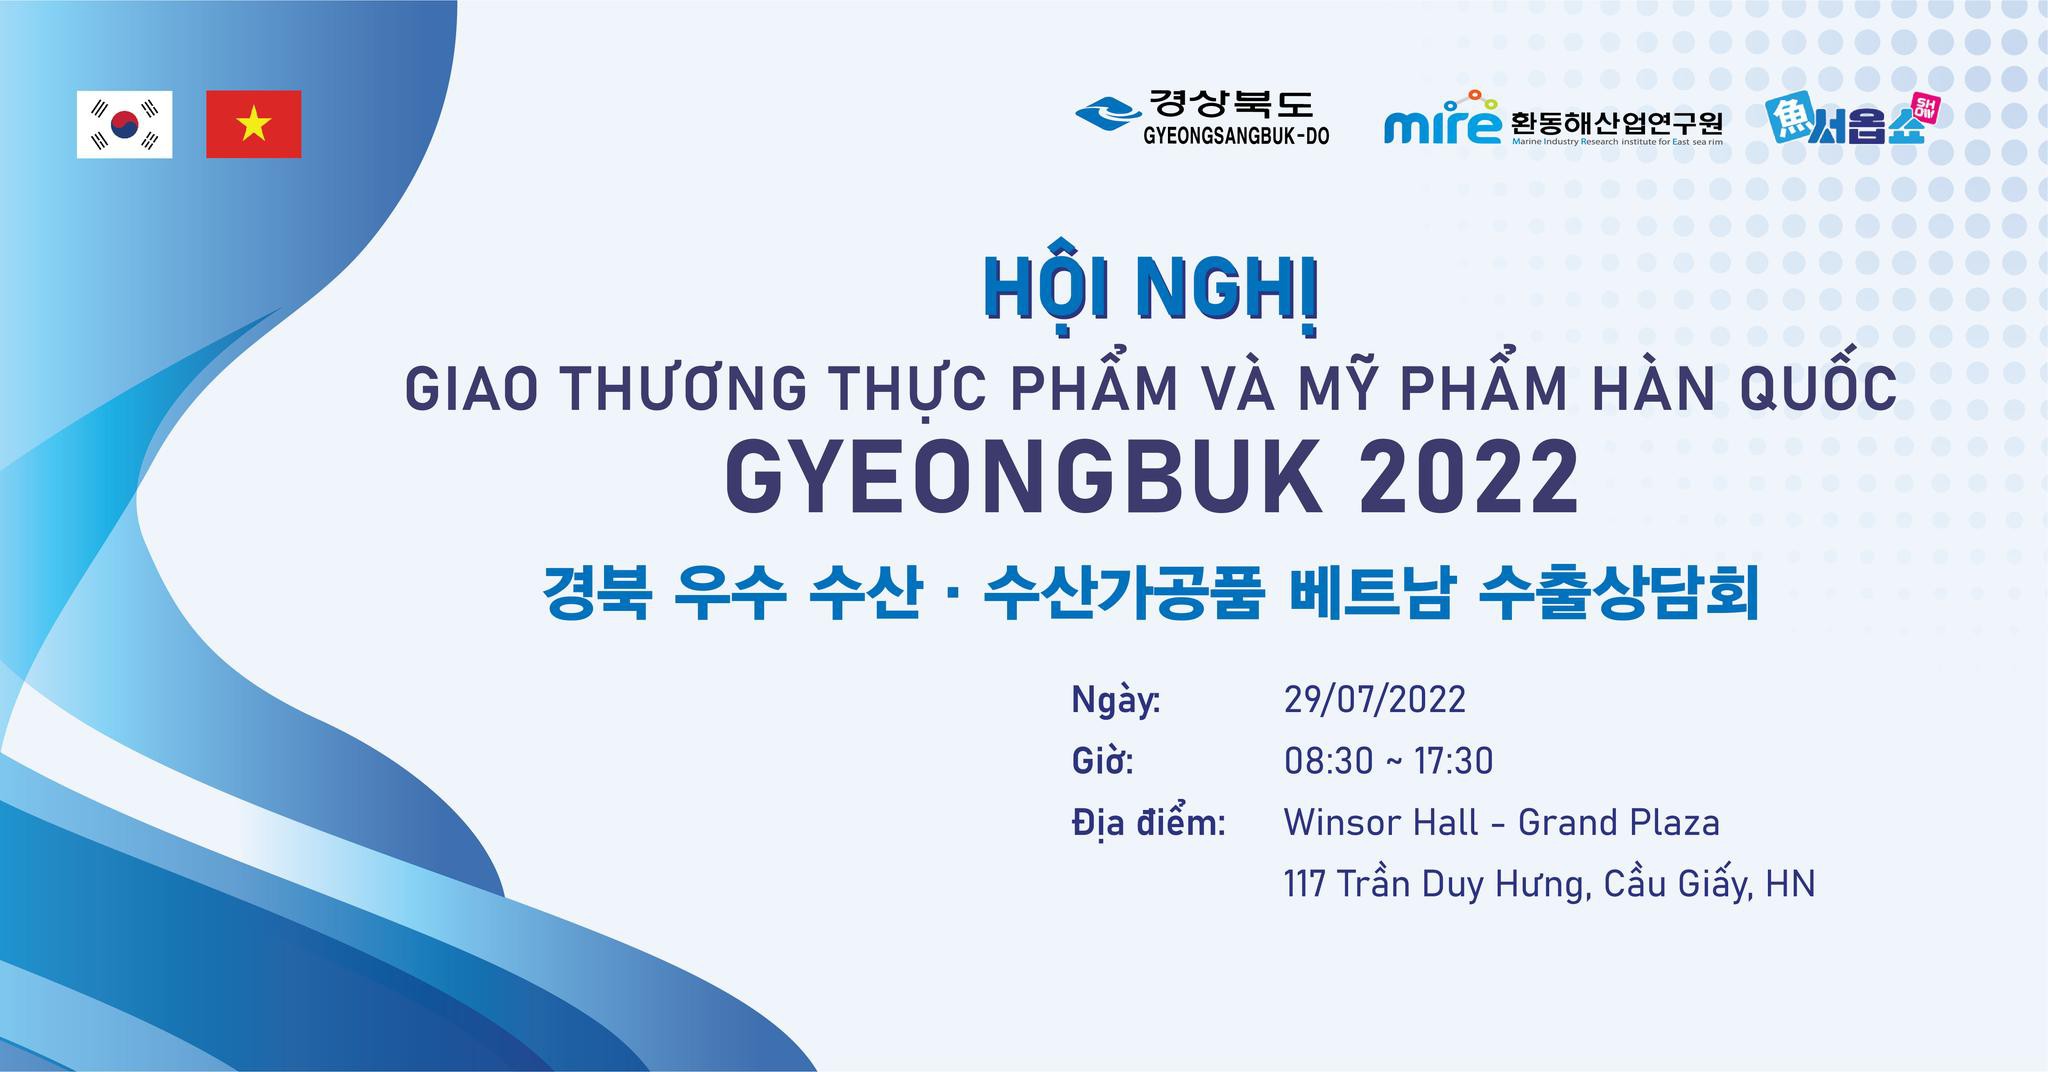 Hội nghị Giao thương Thực phẩm và Mỹ phẩm Gyeongbuk 2022